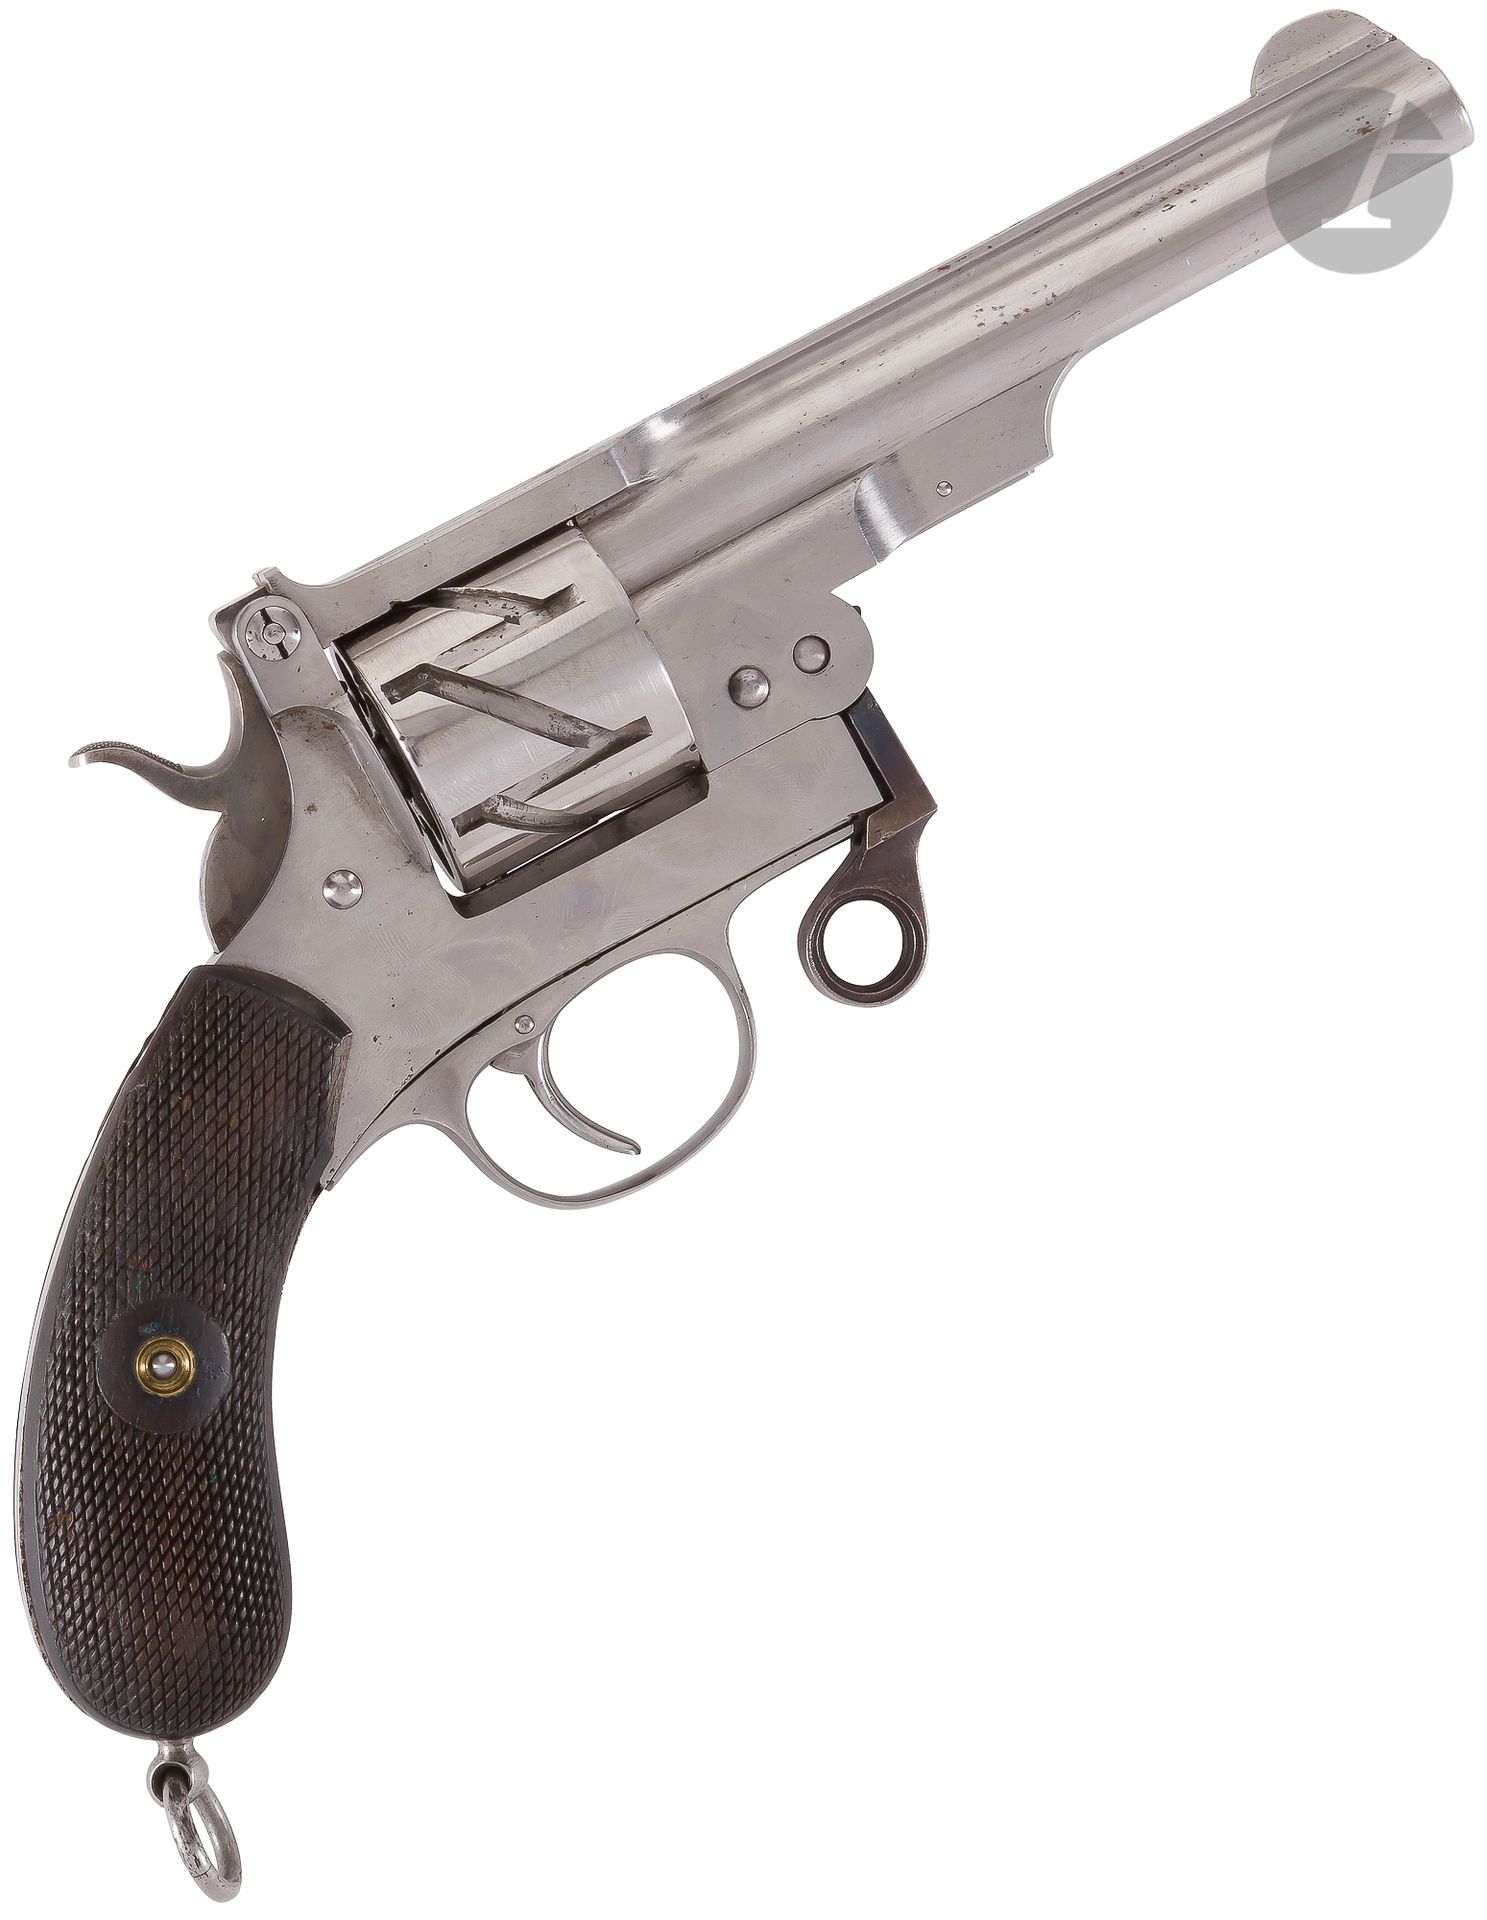 Null 毛瑟 "Zick-Zack"（"Zig-Zag"）系统左轮手枪，1878年专利，6连发，9毫米口径

圆形膛线枪管，全带，顶部标有 "GEBR。MAU&hellip;